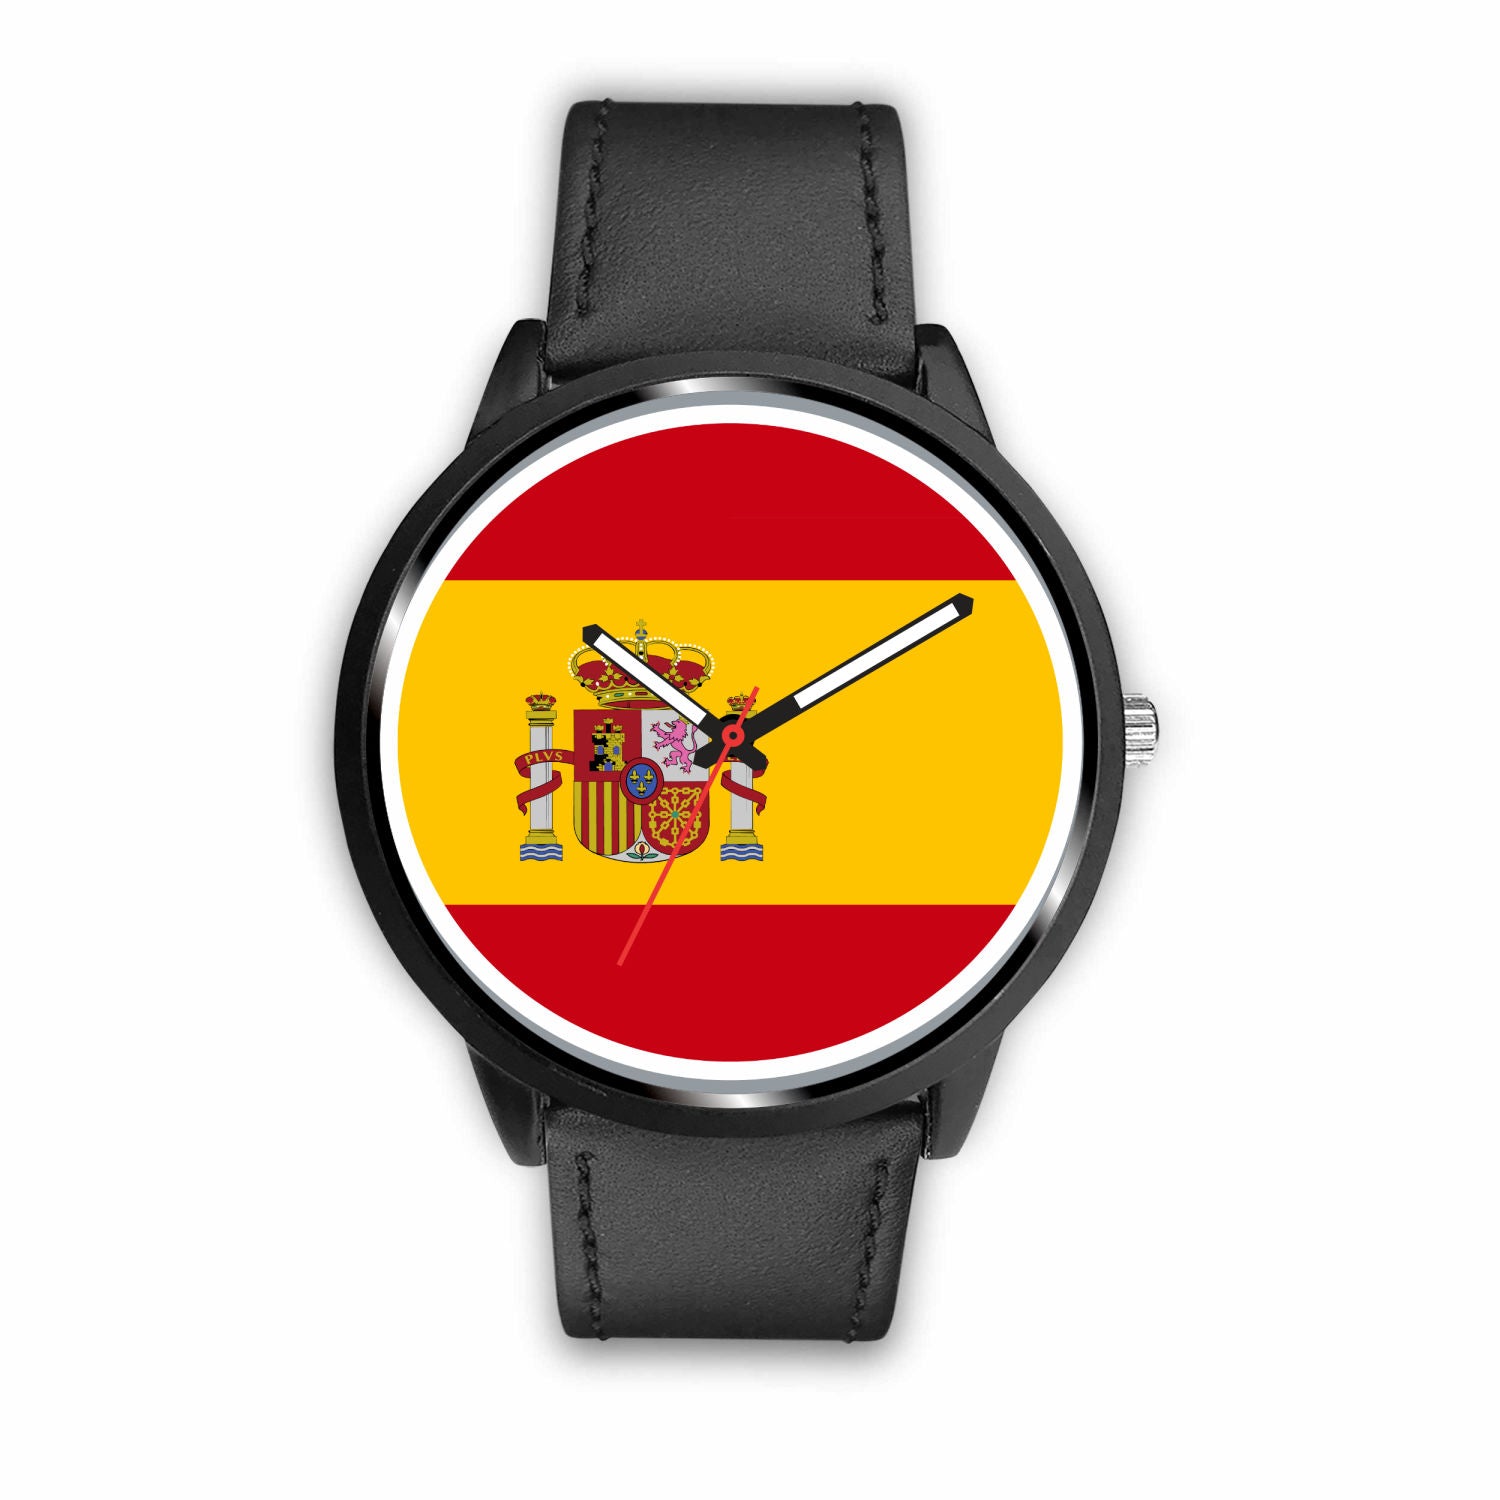 Espana Watch